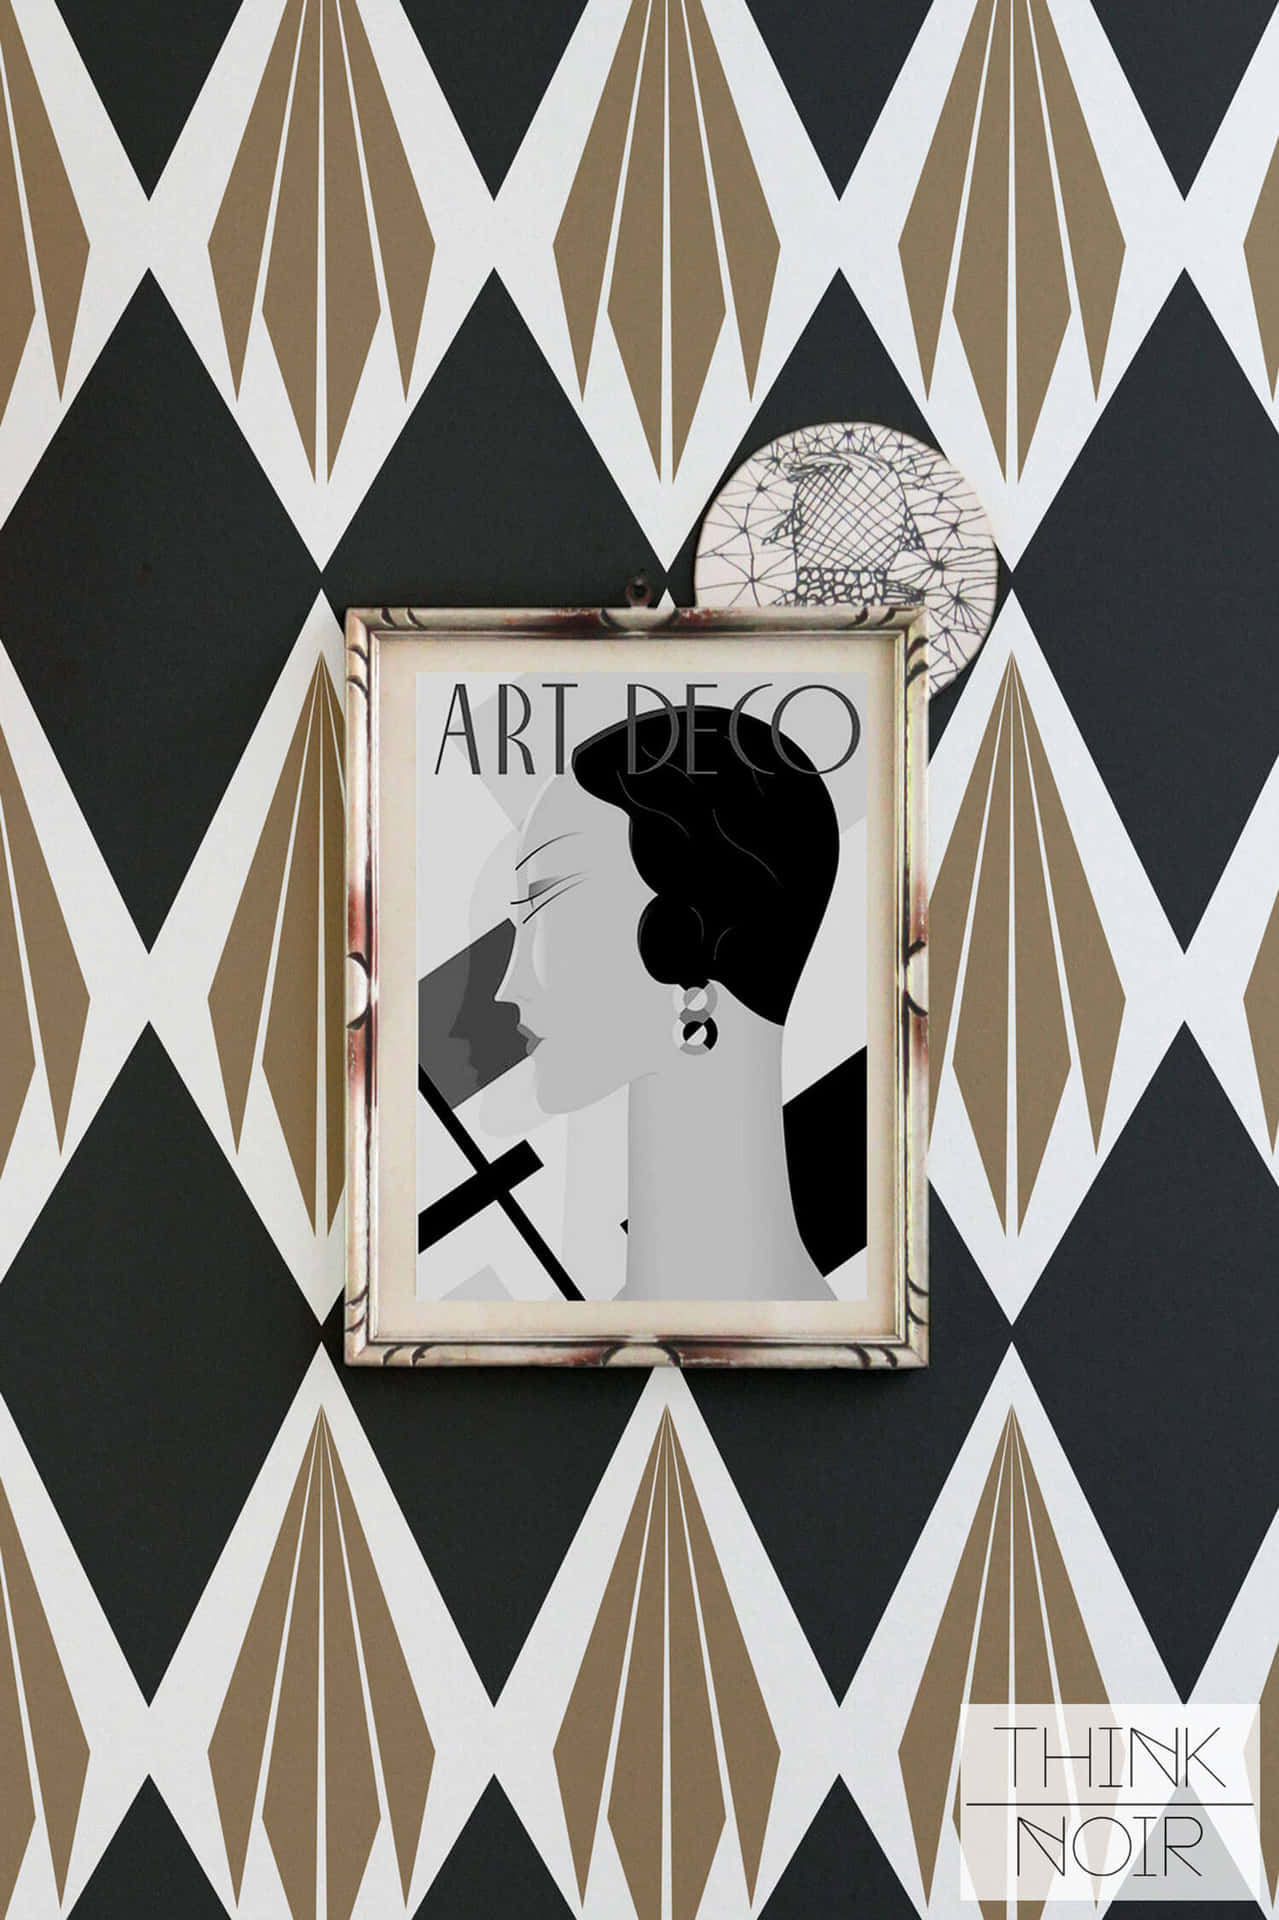 Artdeco-tapete - Ein Schwarz-weißer Bilderrahmen Wallpaper